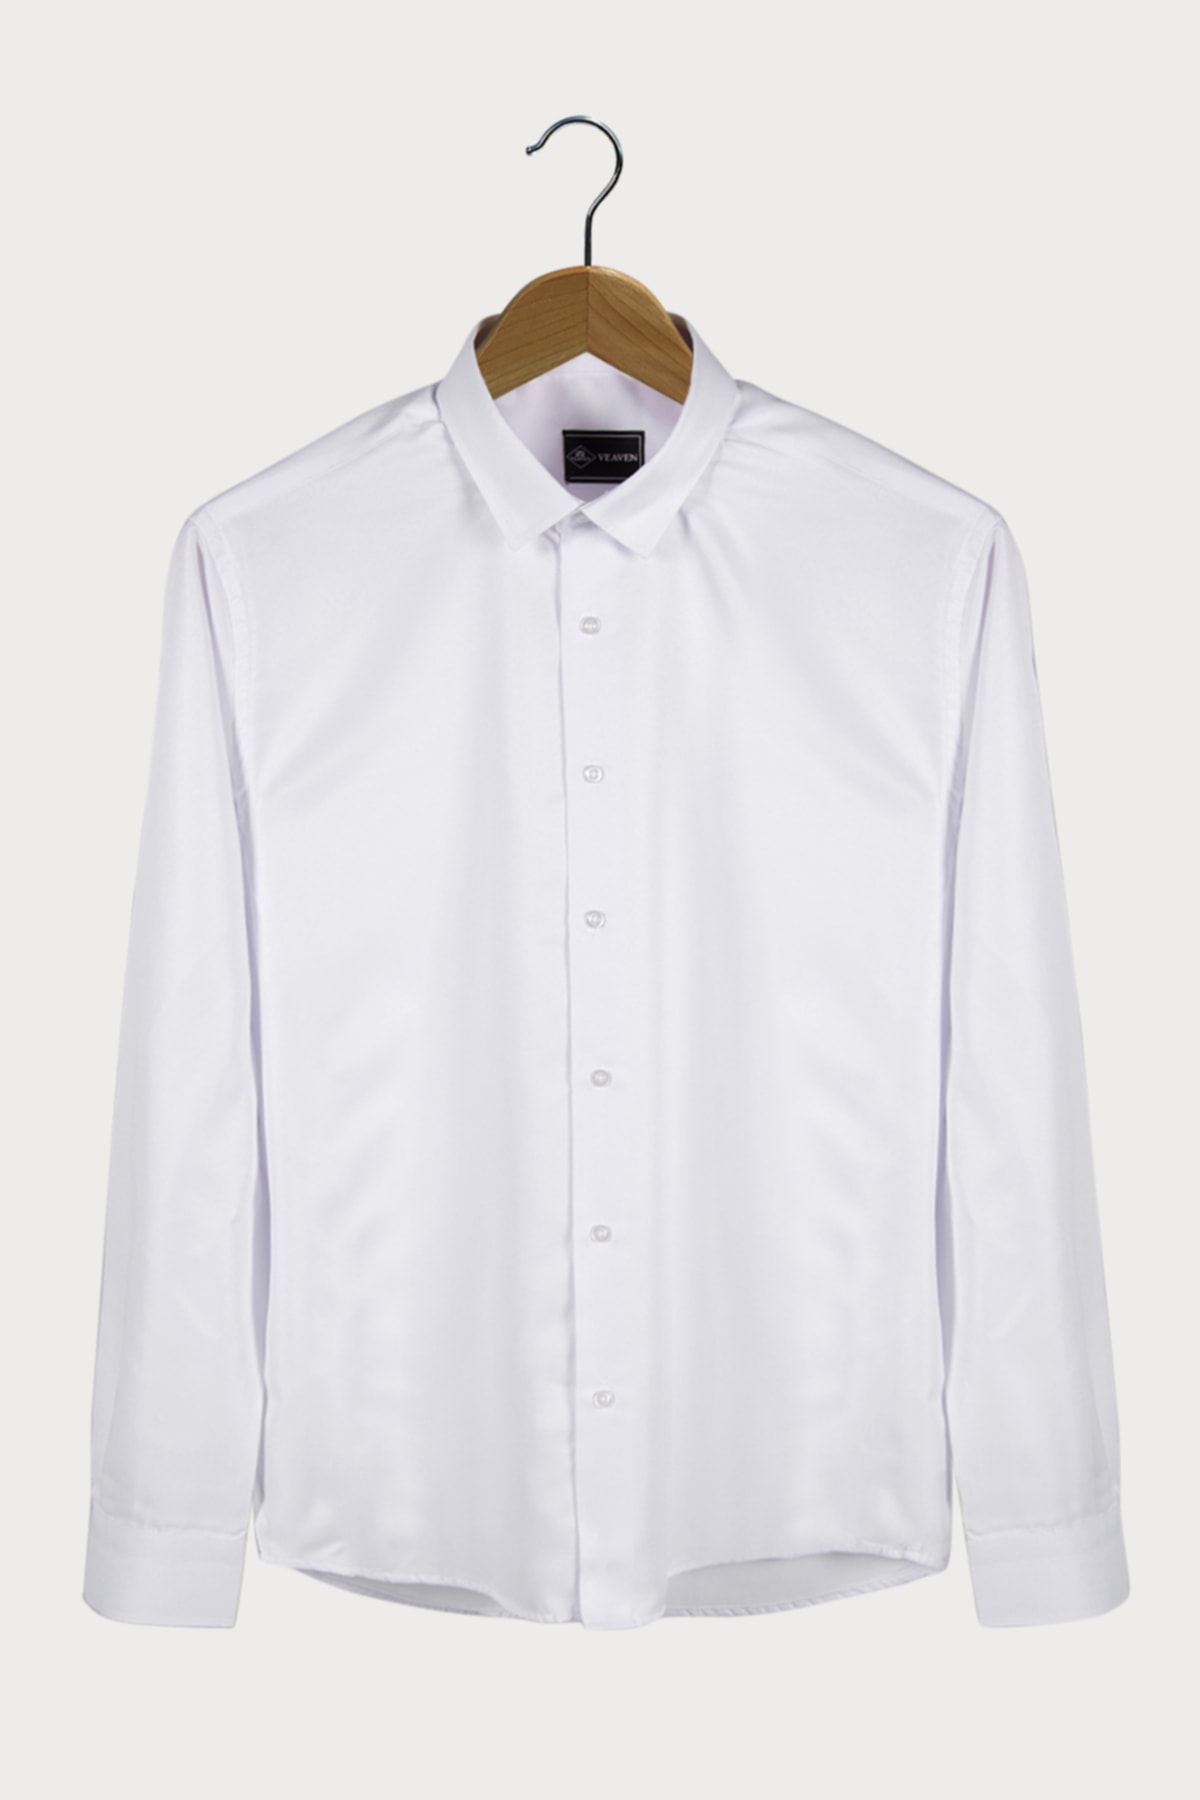 Terapi Men Erkek Italyan Yaka Extra Slim Beyaz Arkası Şeritli Premium Klasik Gömlek